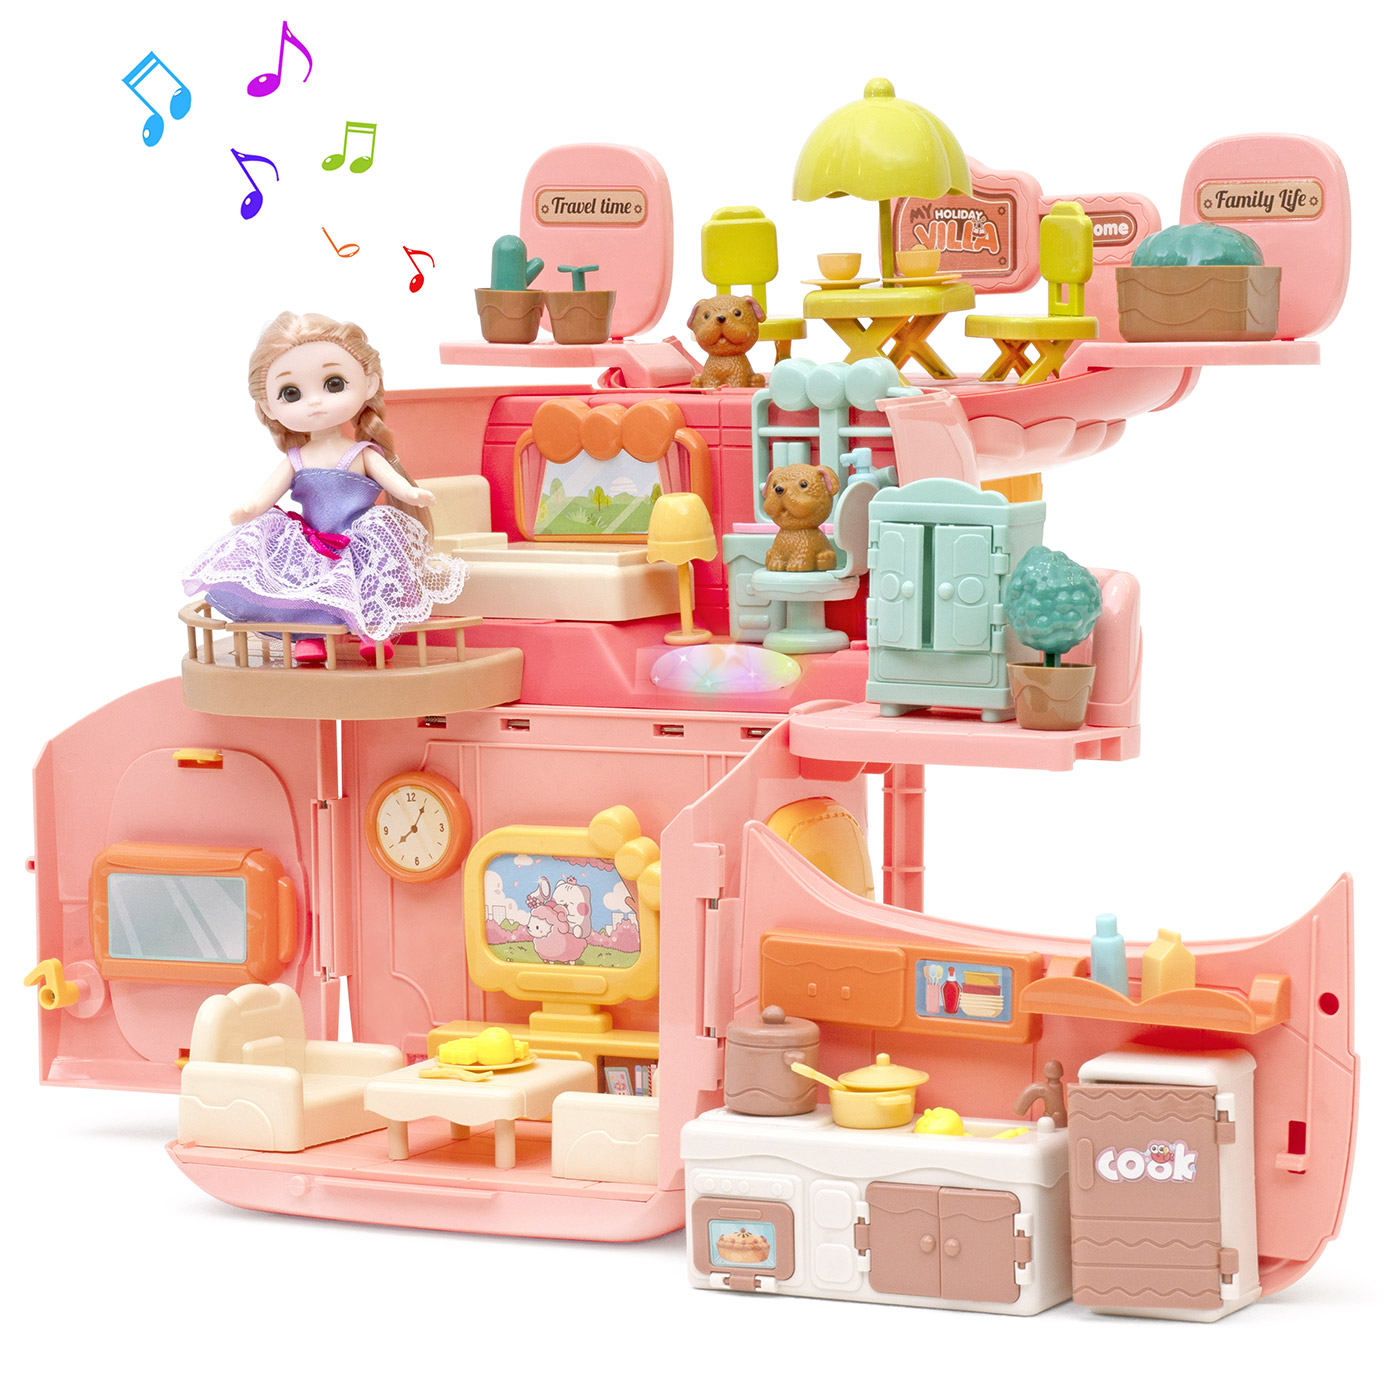 Игровой набор с куклами Funkids Домик Мечты кукольный домик с мебелью арт. CC6673 набор игровой barbie дом мечты на колесах ghl93 фургон трансформер